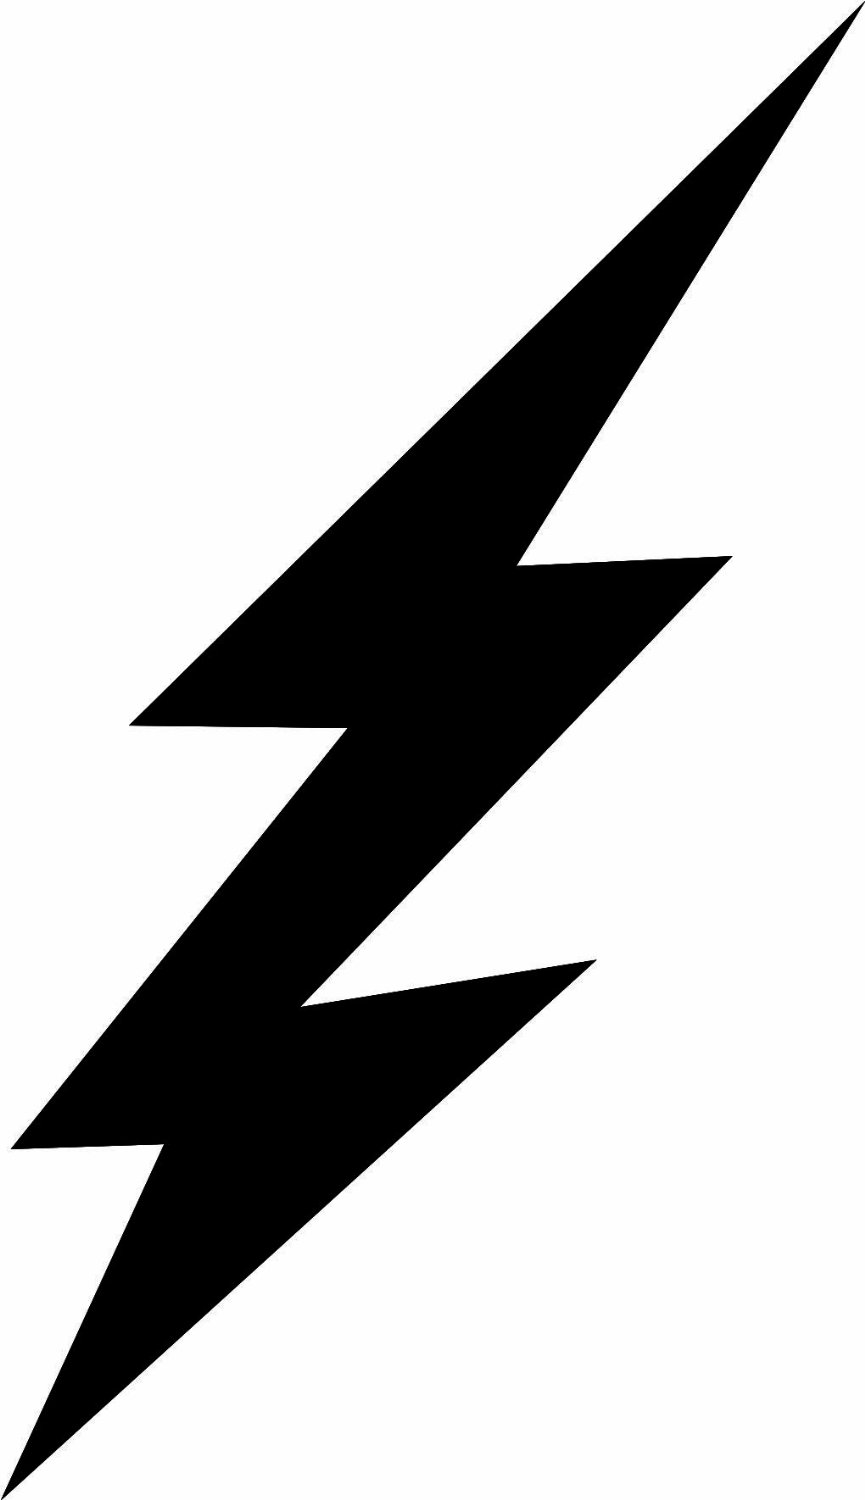 Printable Lightning Bolt Stencil